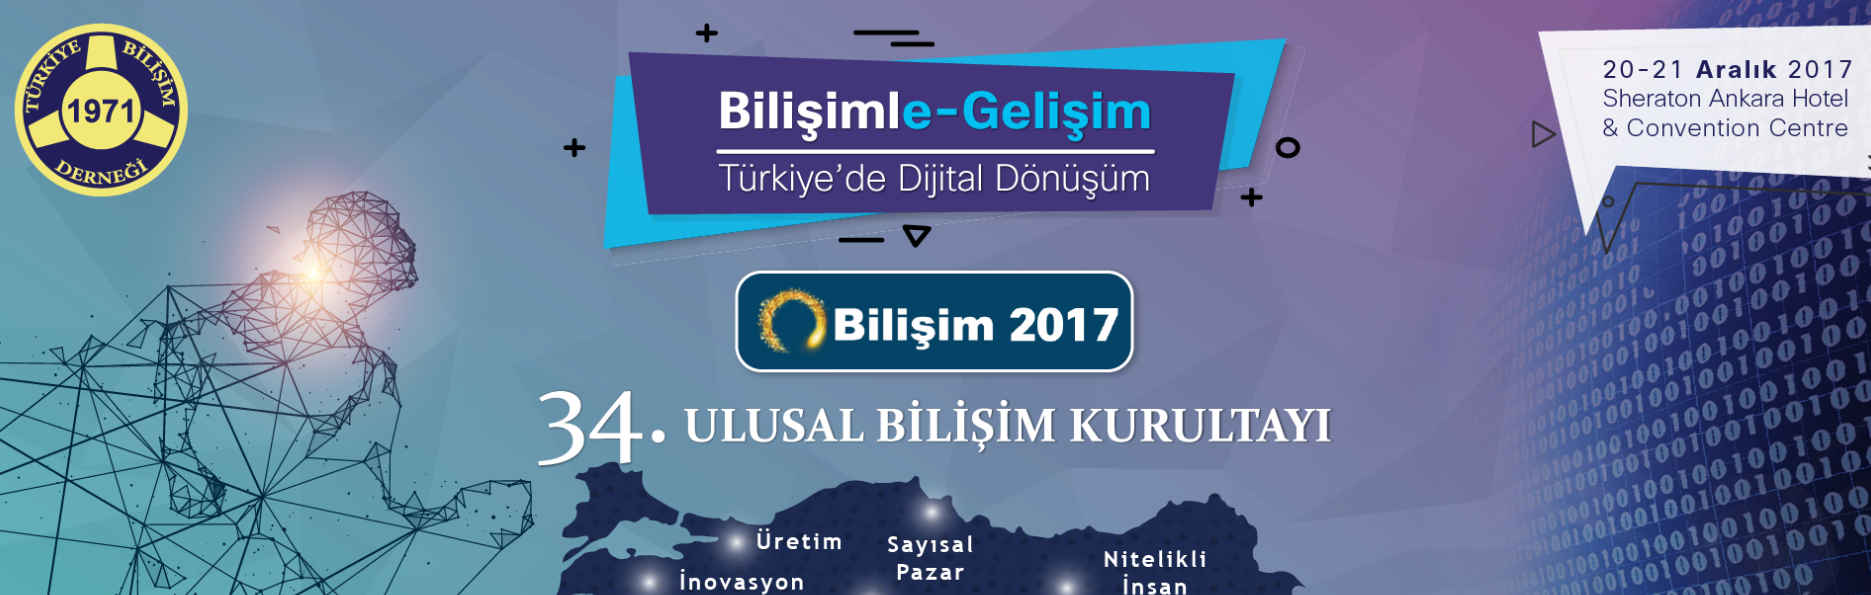 Bilişimle Gelişim: Türkiye’de Dijital Dönüşüm